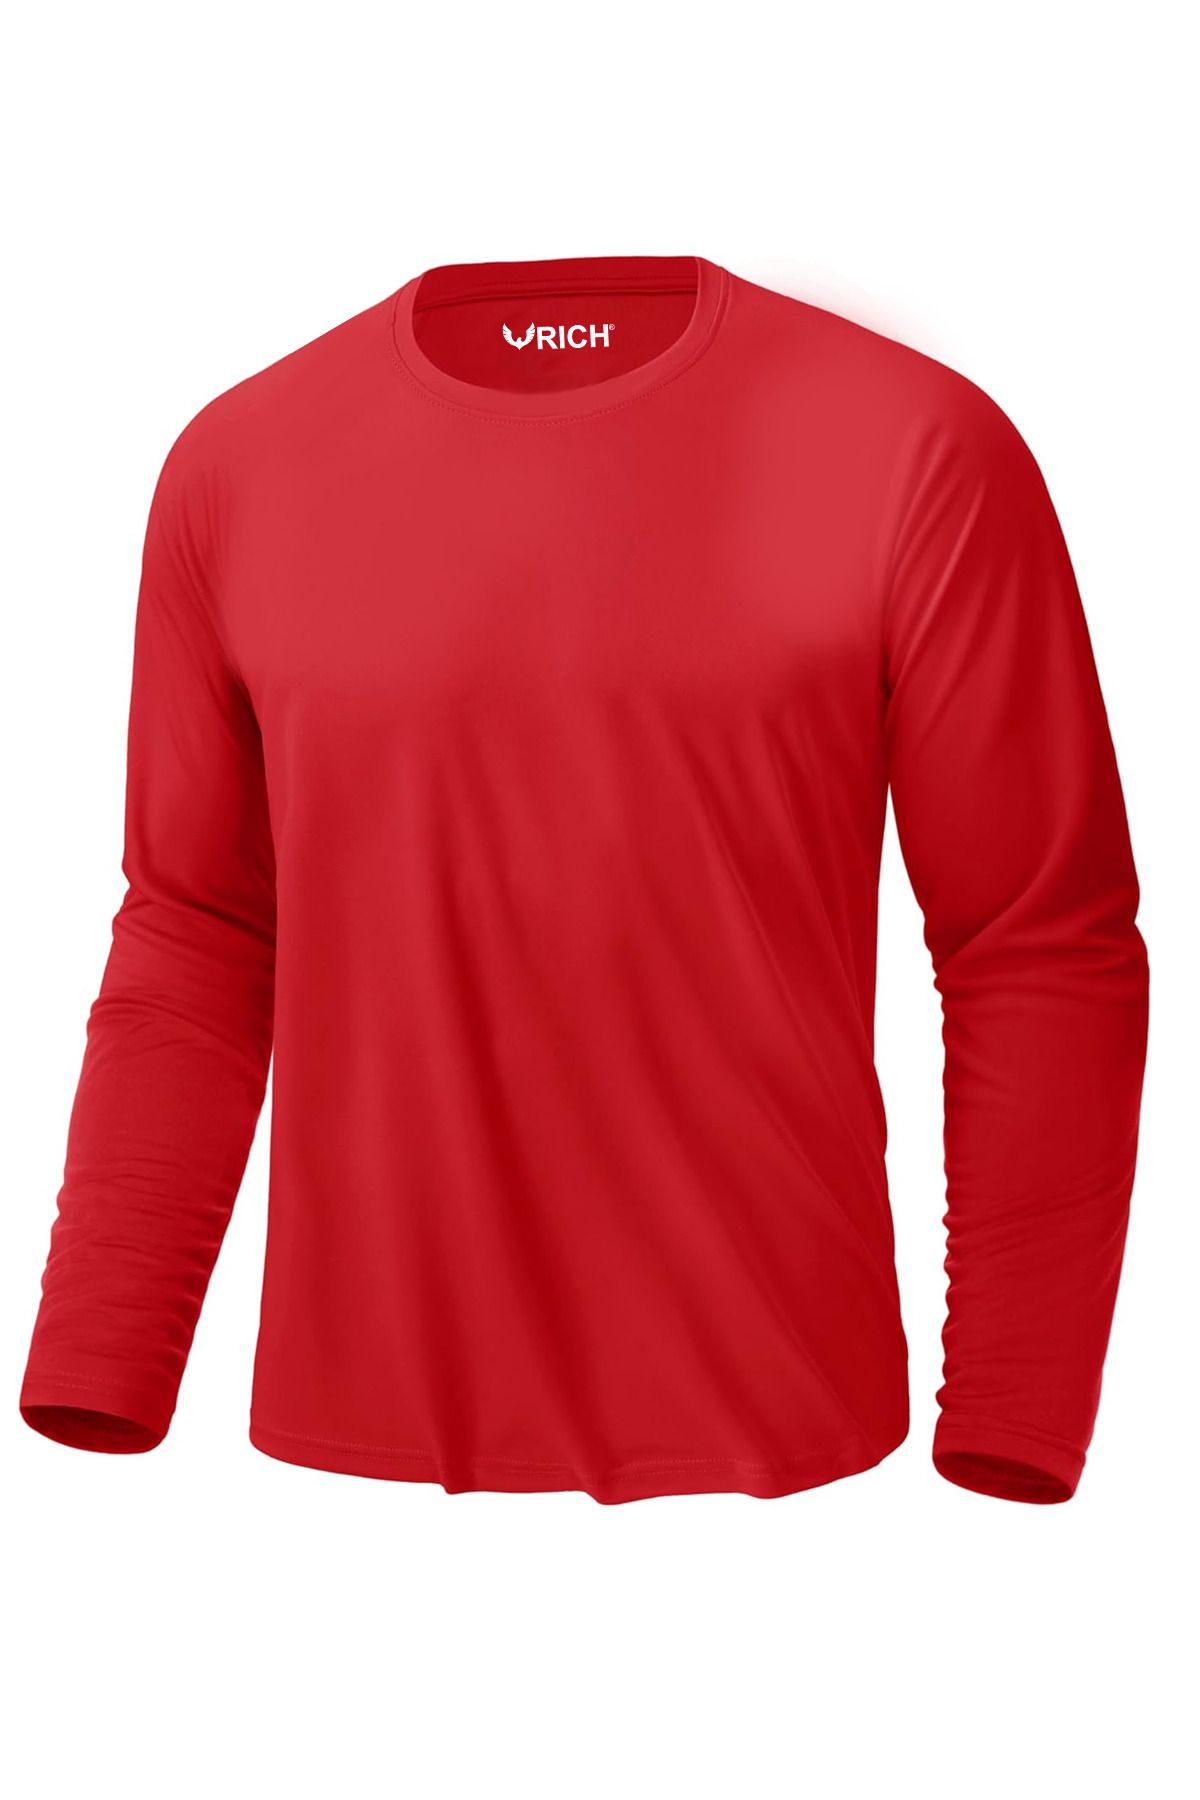 Rich Erkek Kırmızı Basic Uzun Kollu Tişört Sporcu Body T-shirt